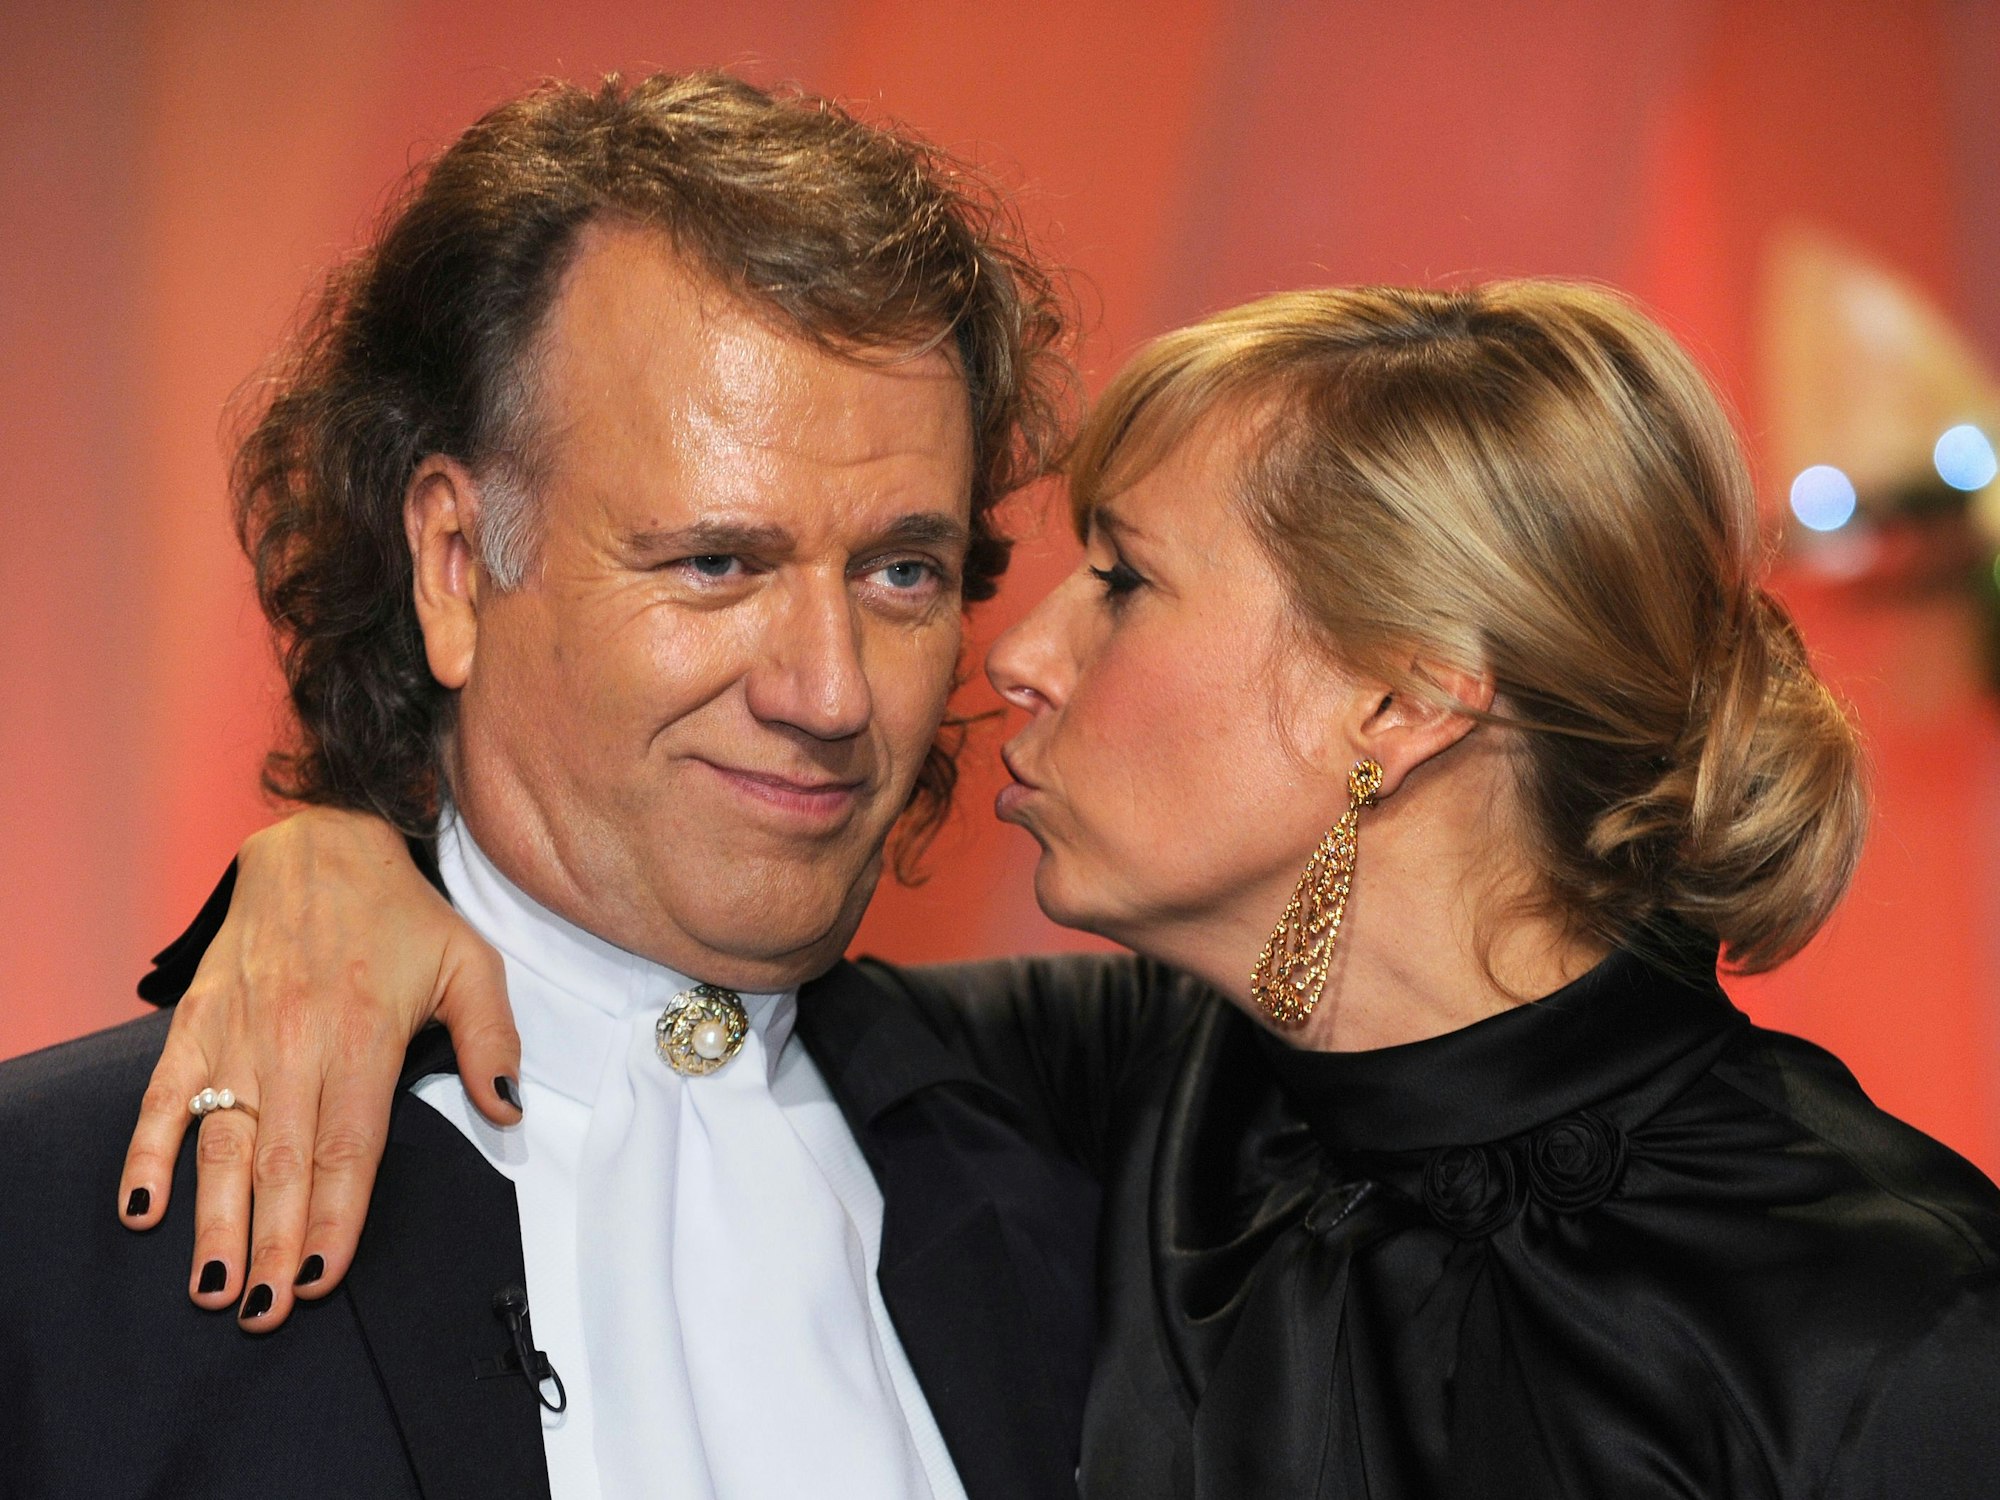 Der Musiker Andrea Rieu ist am 13.11.2010 in Köln zu Gast in der von Andrea Kiewel moderierten ZDF-Sendung "Mein allerschönstes Weihnachtslied".